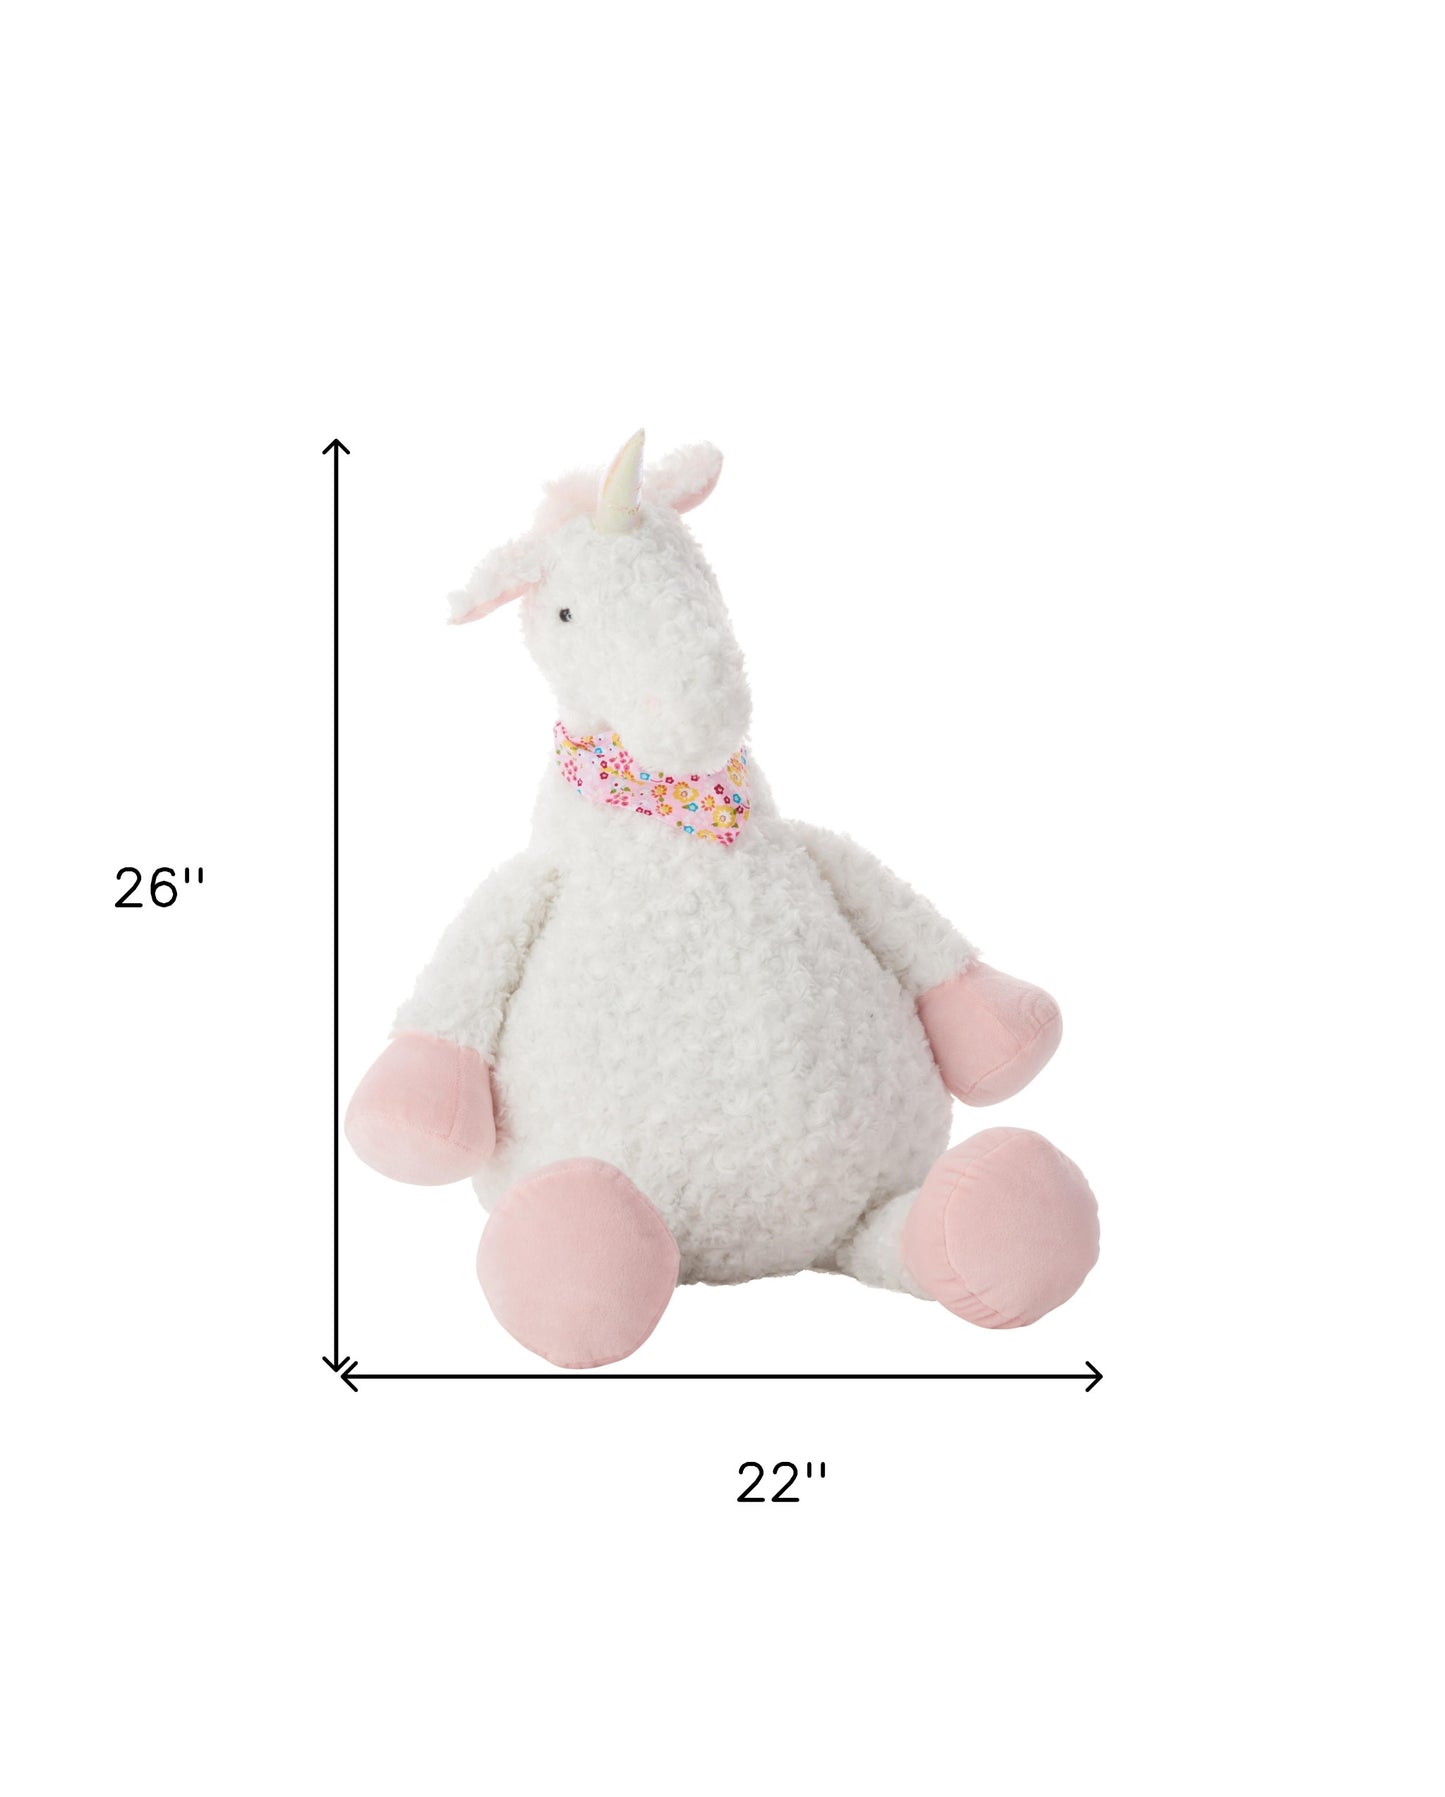 22" X 26" Ivory Unicorn Throw Pillow